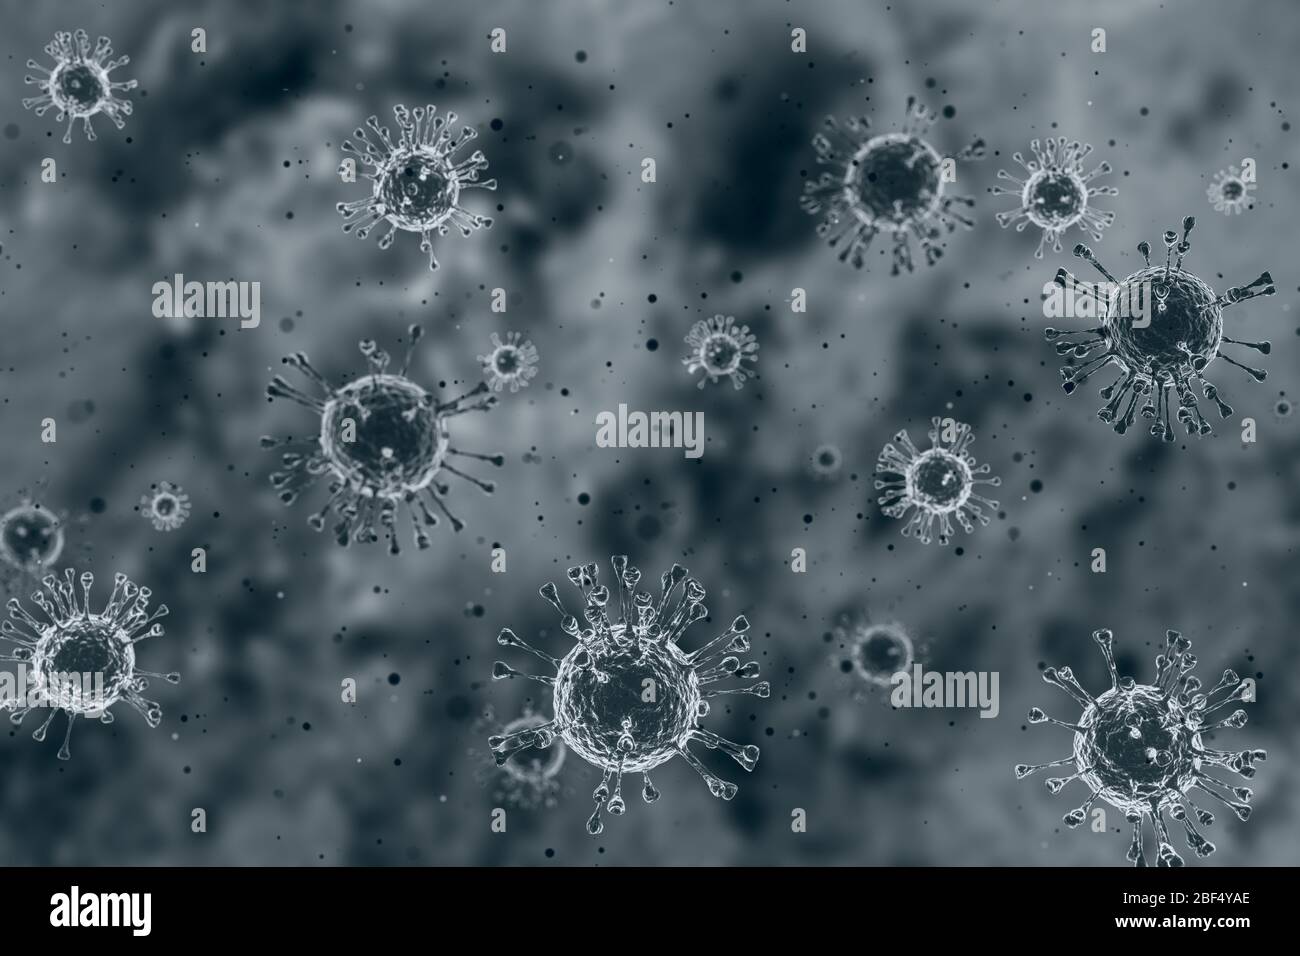 Virus dans la poussière sale flux de fumée dans l'air Covidvirus 3. Banque D'Images